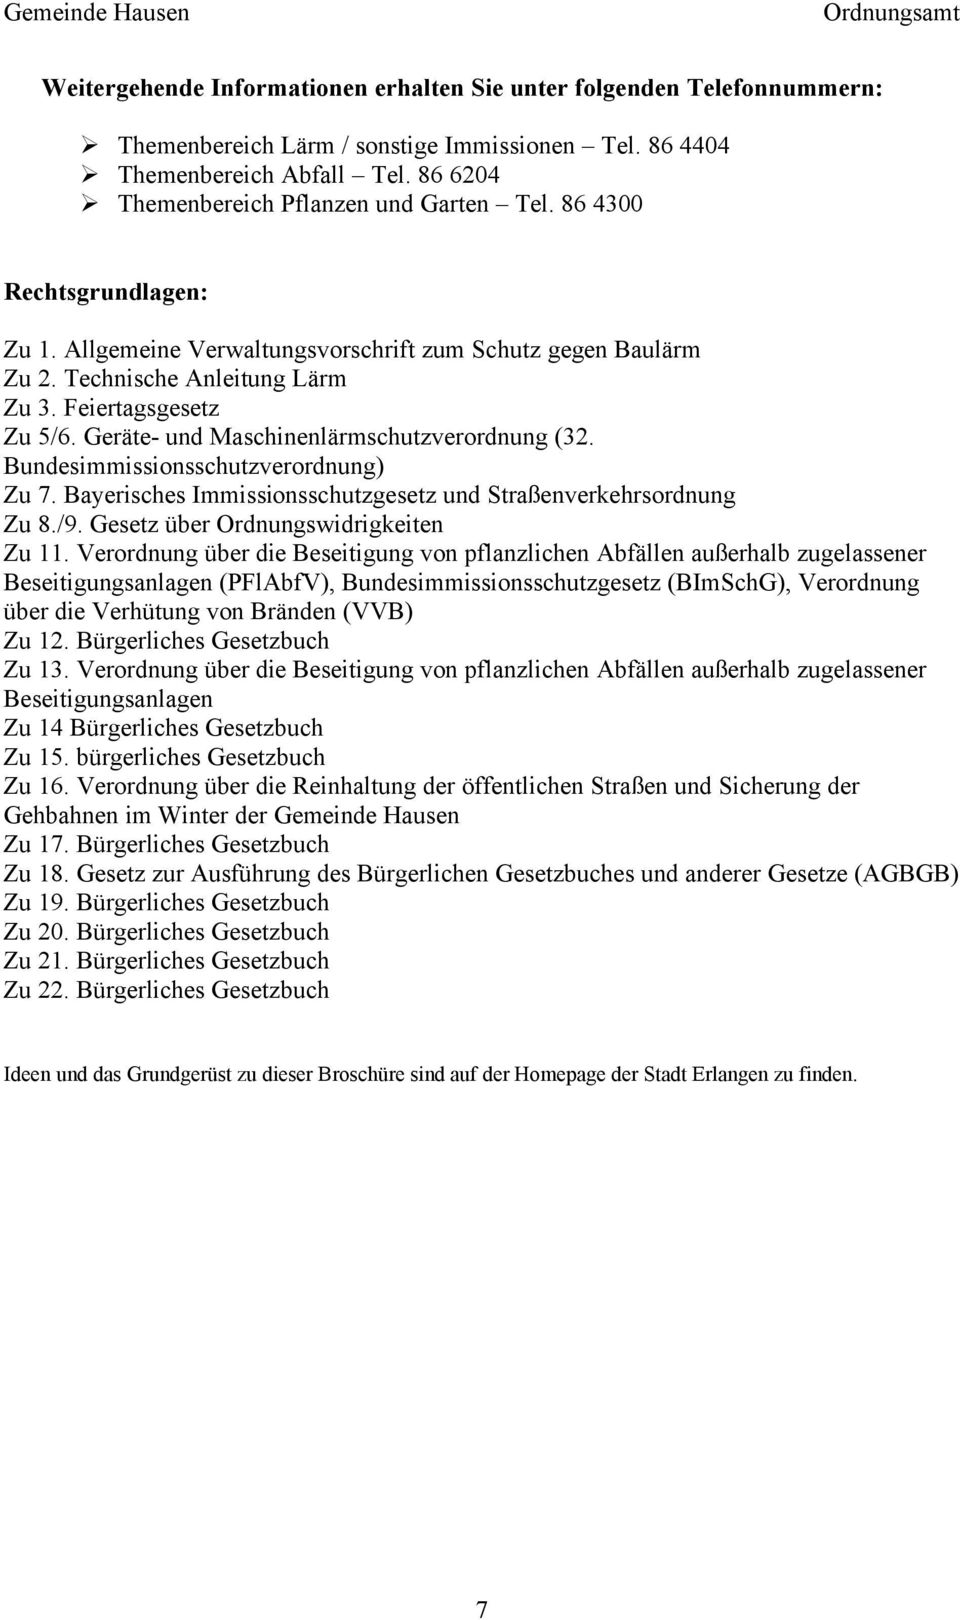 Geräte- und Maschinenlärmschutzverordnung (32. Bundesimmissionsschutzverordnung) Zu 7. Bayerisches Immissionsschutzgesetz und Straßenverkehrsordnung Zu 8./9. Gesetz über Ordnungswidrigkeiten Zu 11.